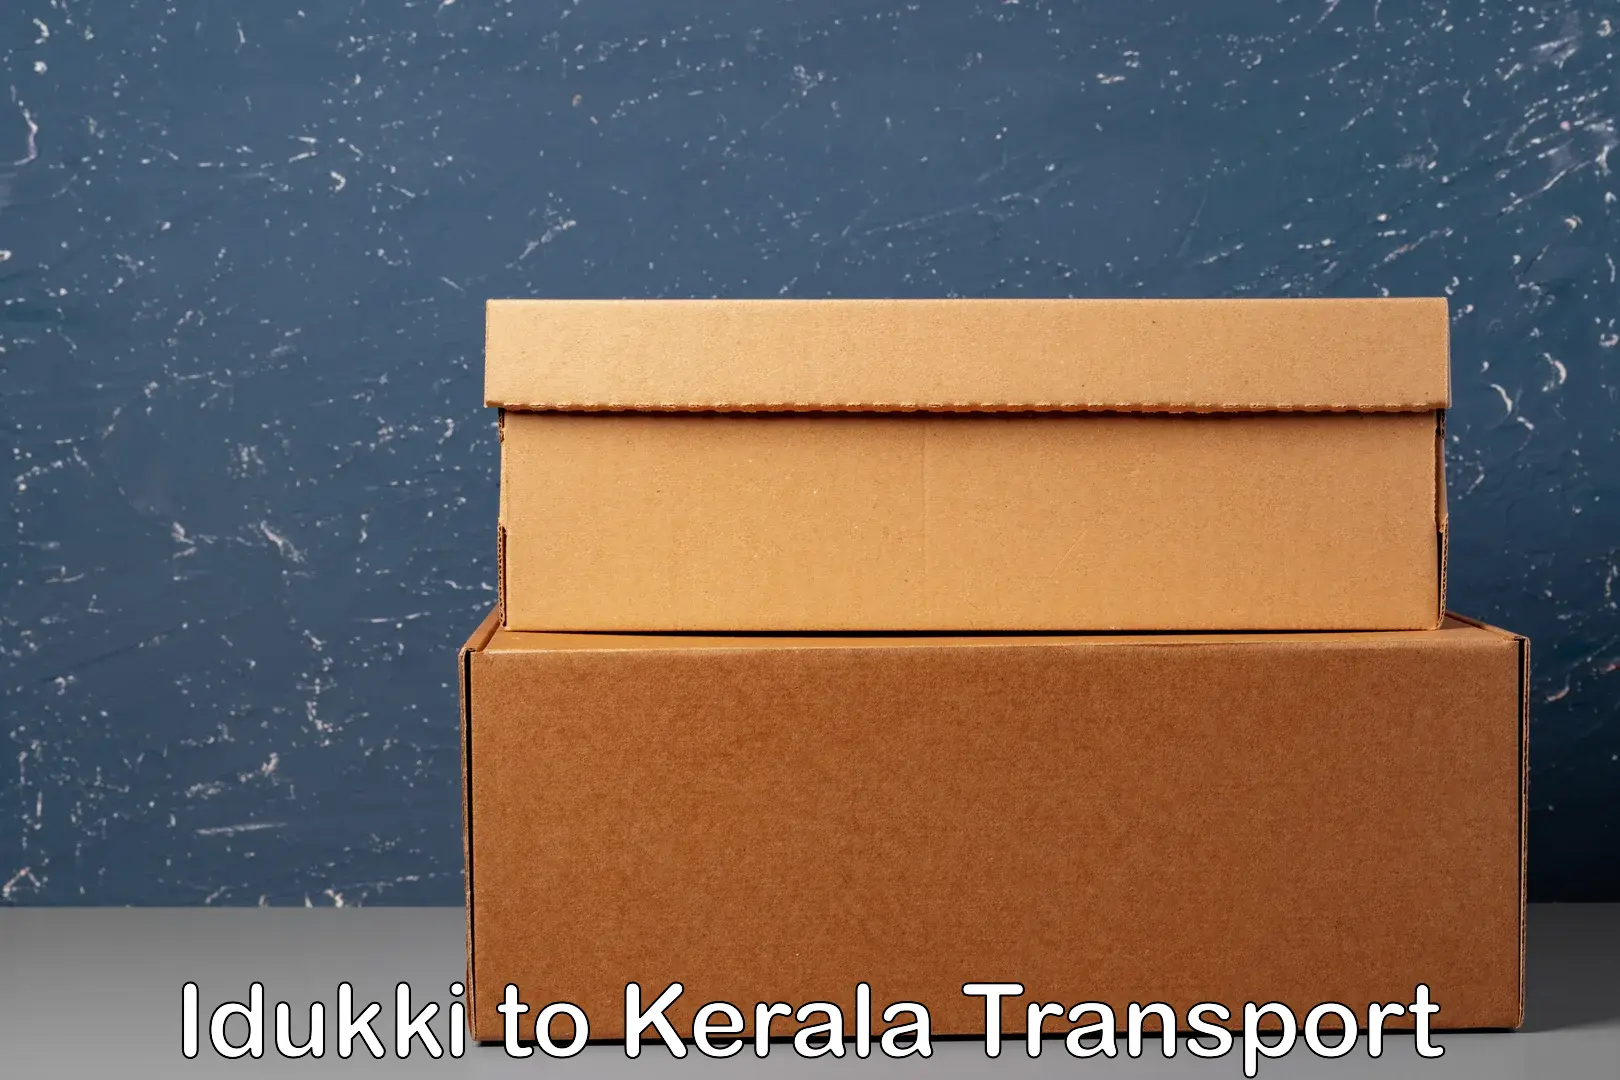 Package delivery services Idukki to Thiruvananthapuram